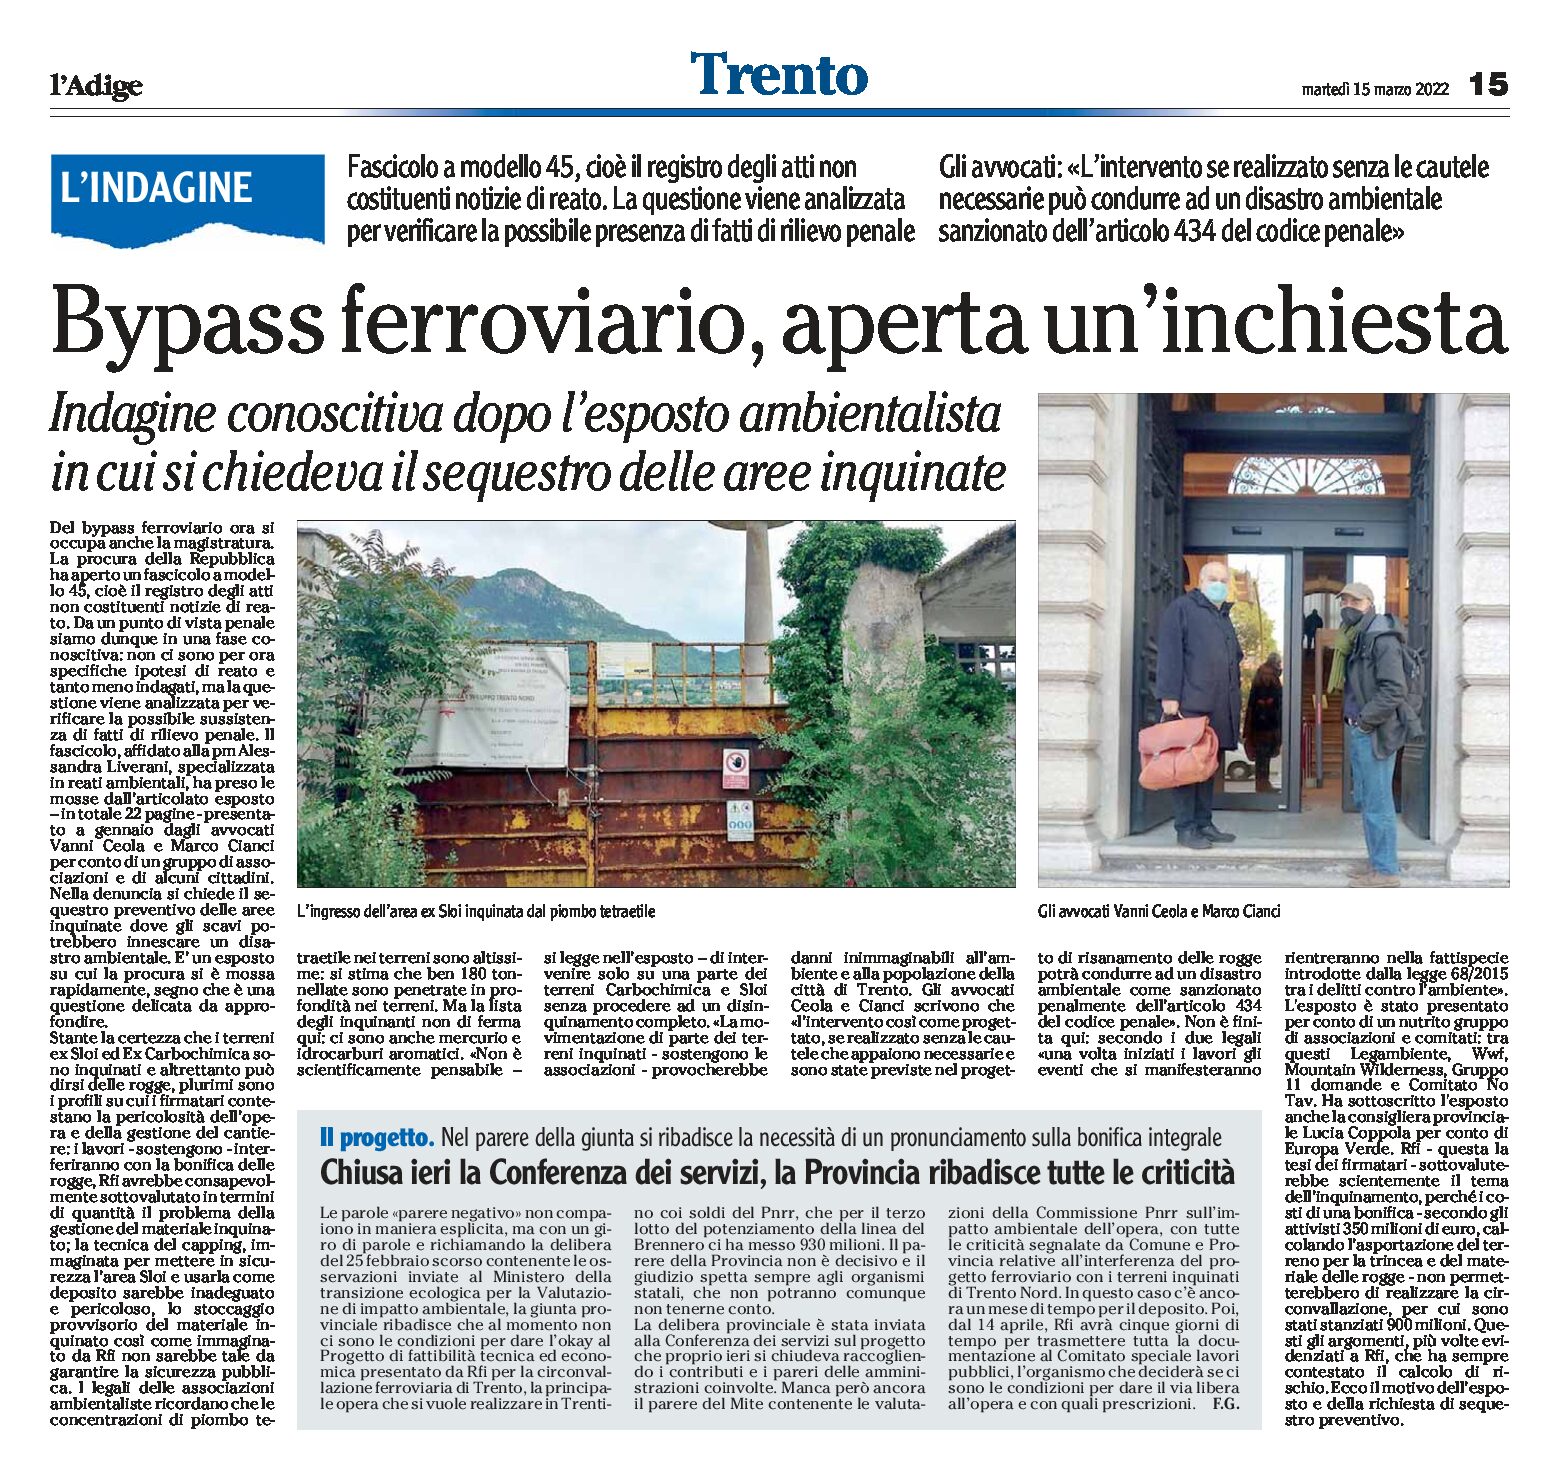 Trento: bypass ferroviario, aperta un’inchiesta.